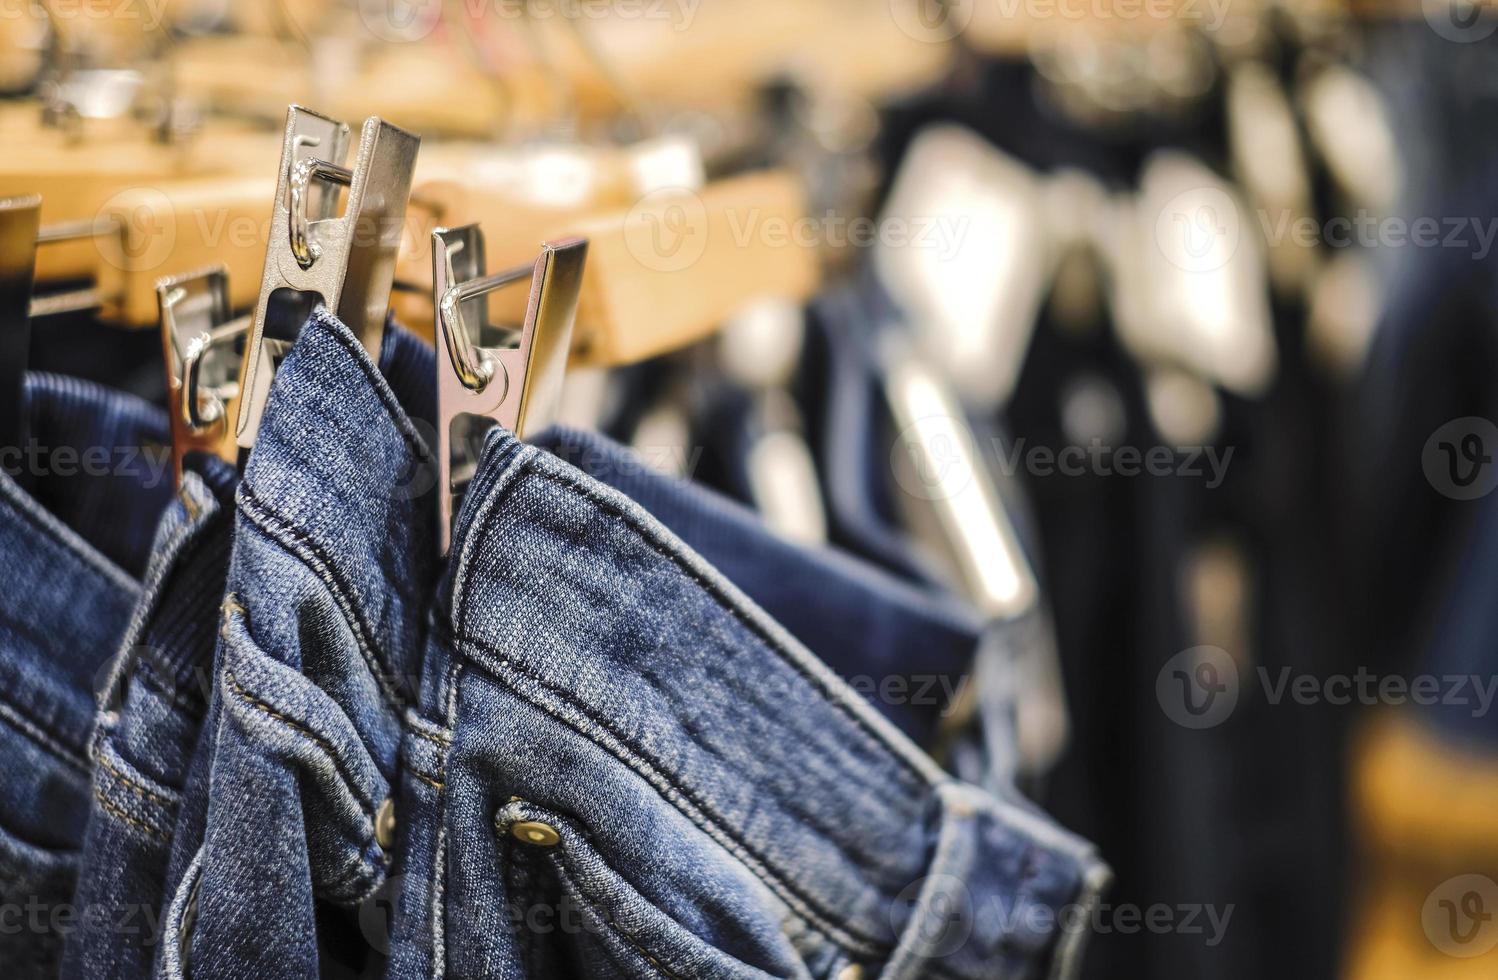 rij van opgehangen spijkerbroek broek in winkel foto